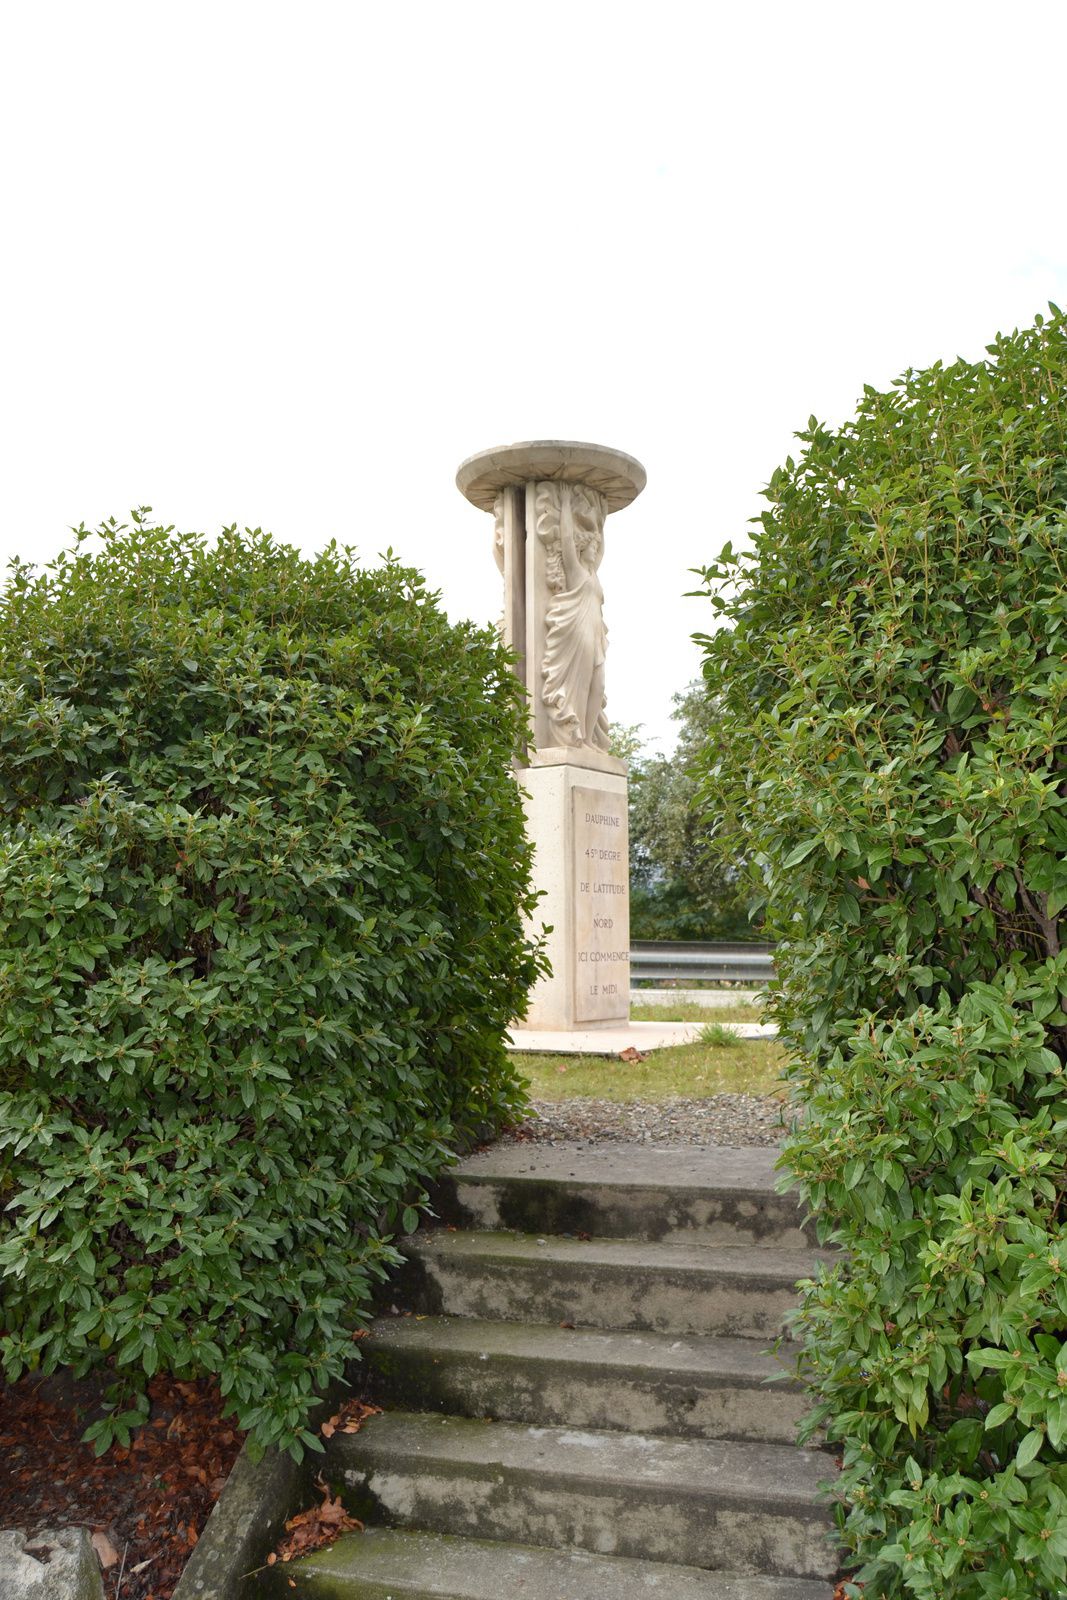 Situé sur la gauche de la route nationale 7, à la sortie du village de Pont-De-L'Isère, juste avant de traverser la rivière "Isère", affluent du Rhône, se trouve le monument qui symbolise le passage d'une ligne imaginaire représentant le 45e parallèle.